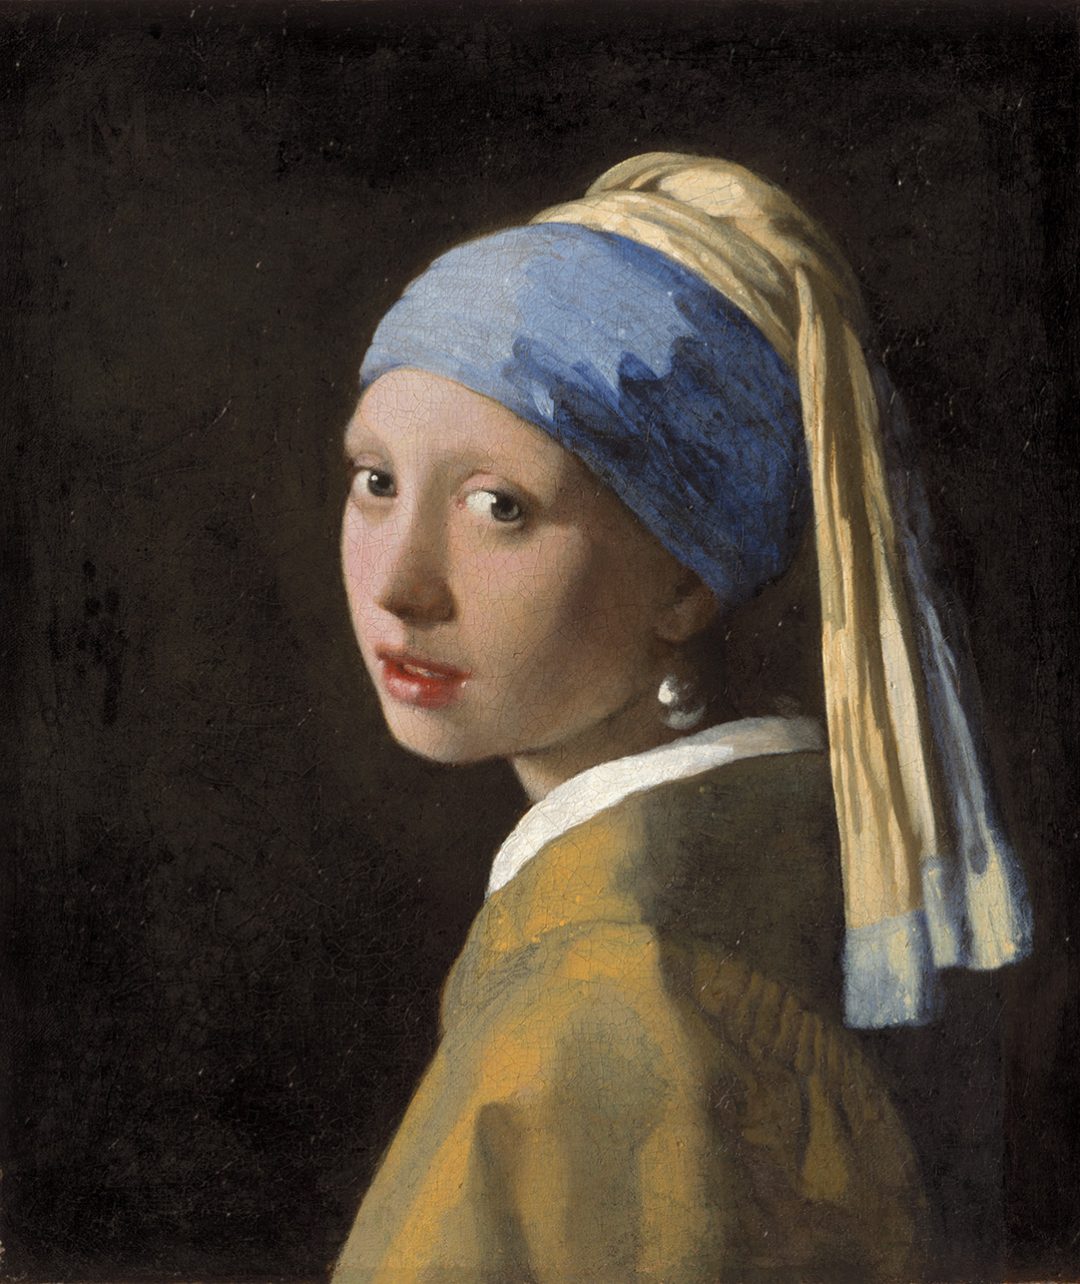 Mai così vicino alla ragazza di Vermeer: l’iperrealistico tour nel museo Mauritshuis all’Aia  